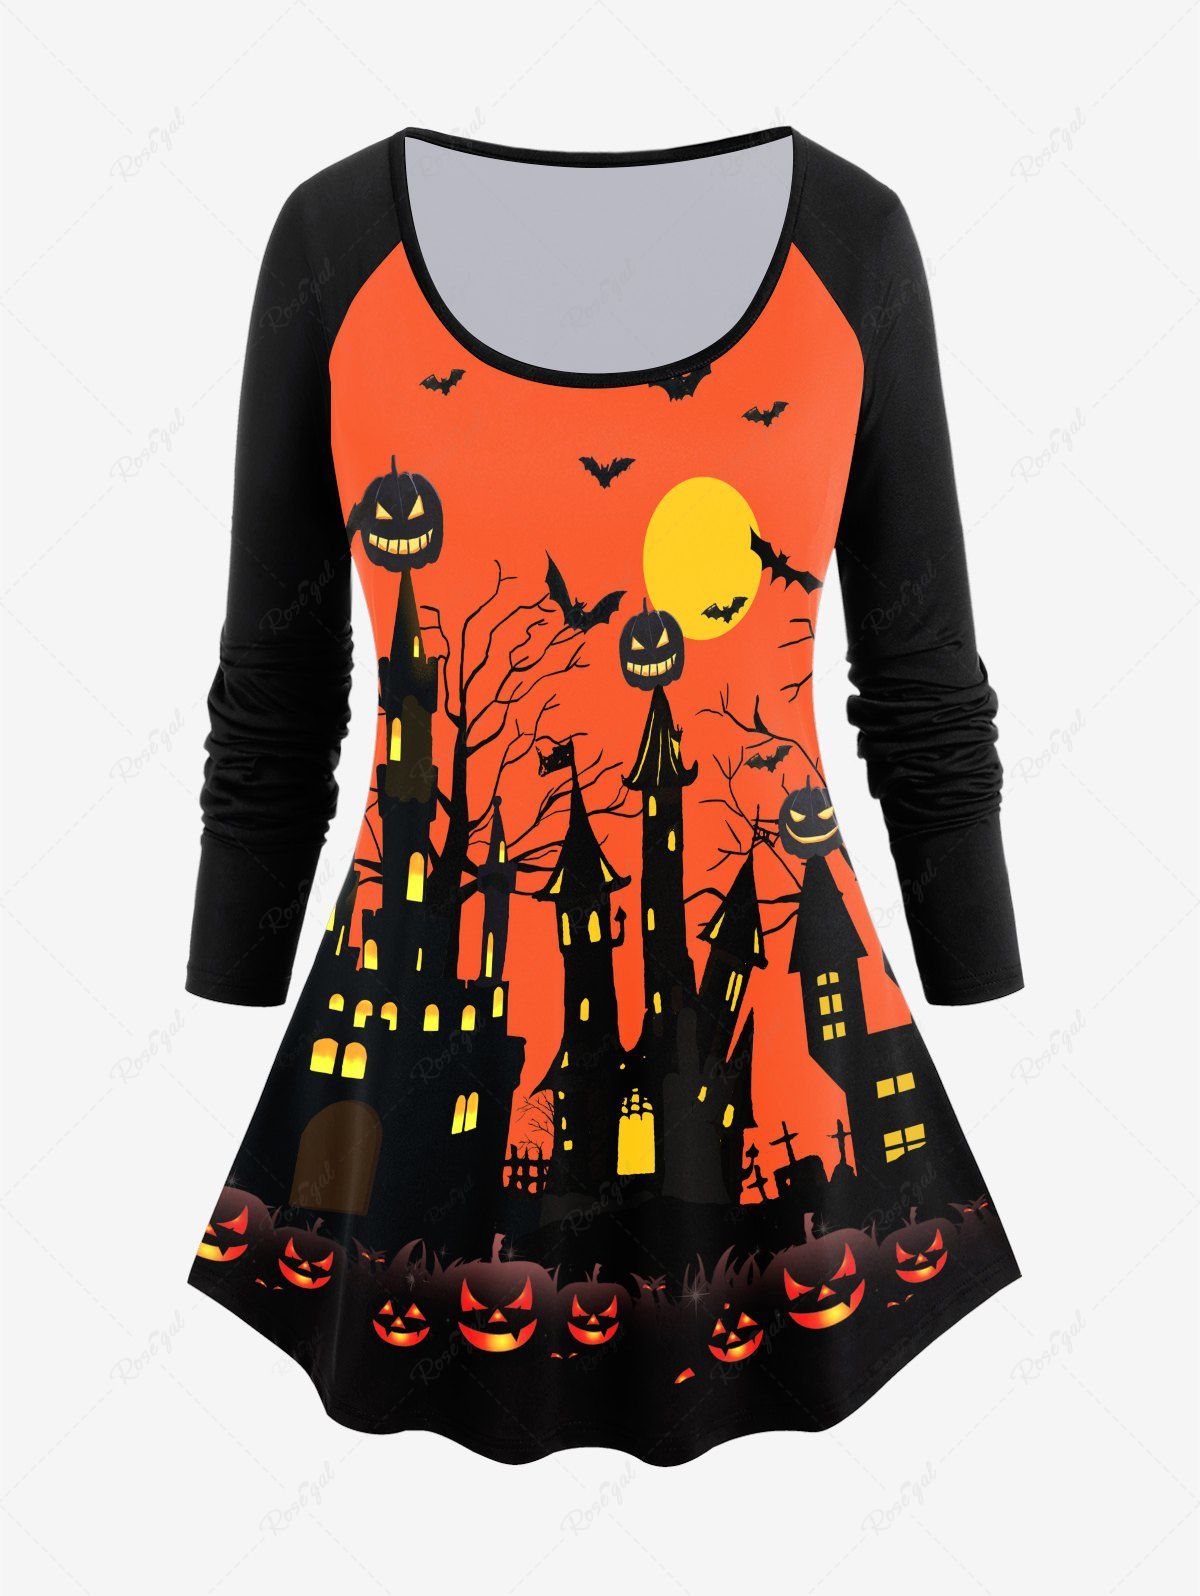 Outfit Pumpkins Bats Printed Raglan Sleeves Halloween Tee  